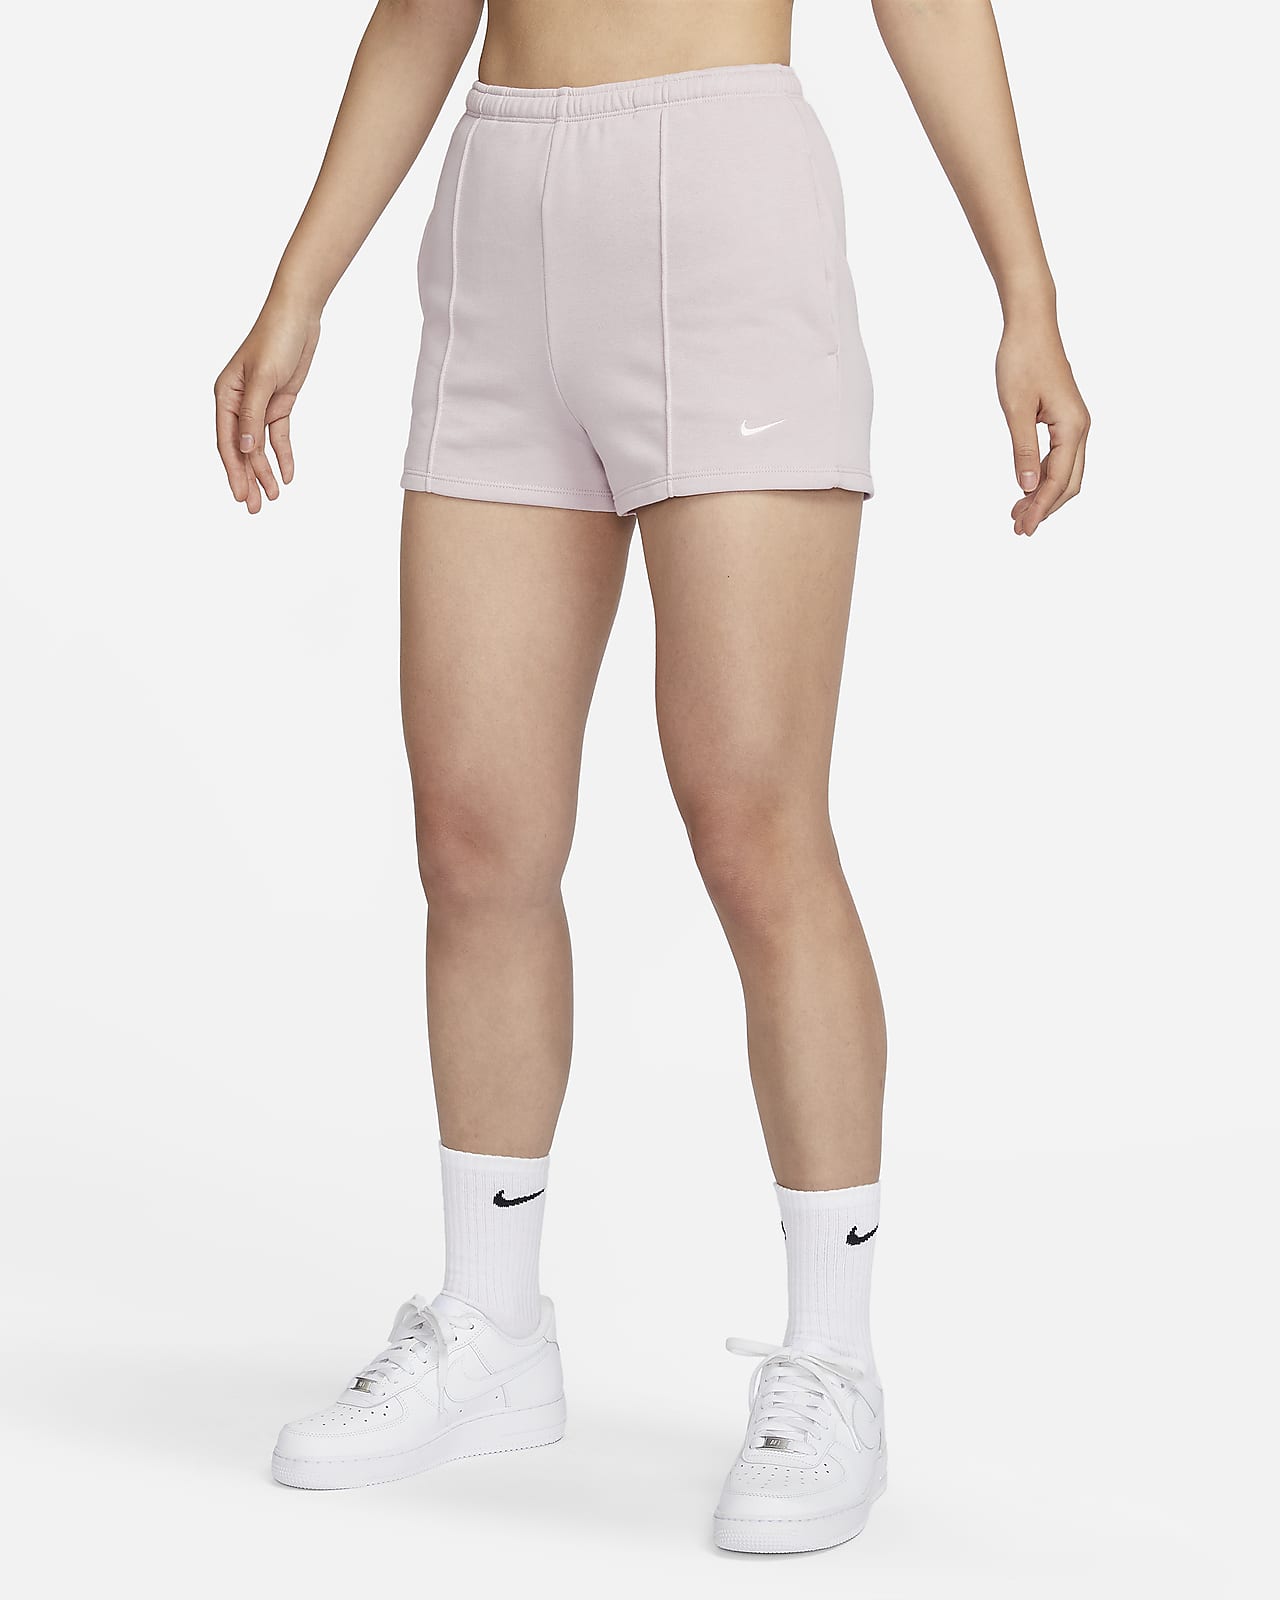 Women's Dri-FIT Shorts. Nike ID